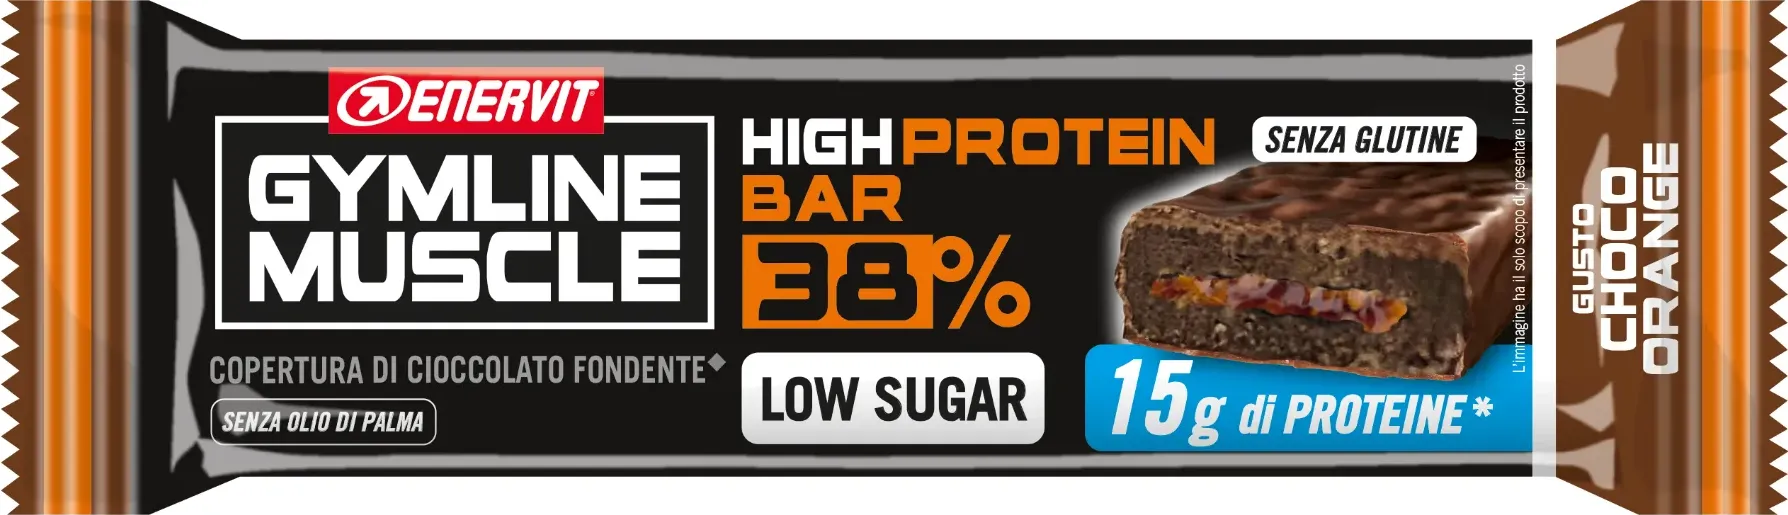 Enervit Gymline Protein Bar 38% Barretta Cioccolato-Arancia 40 G